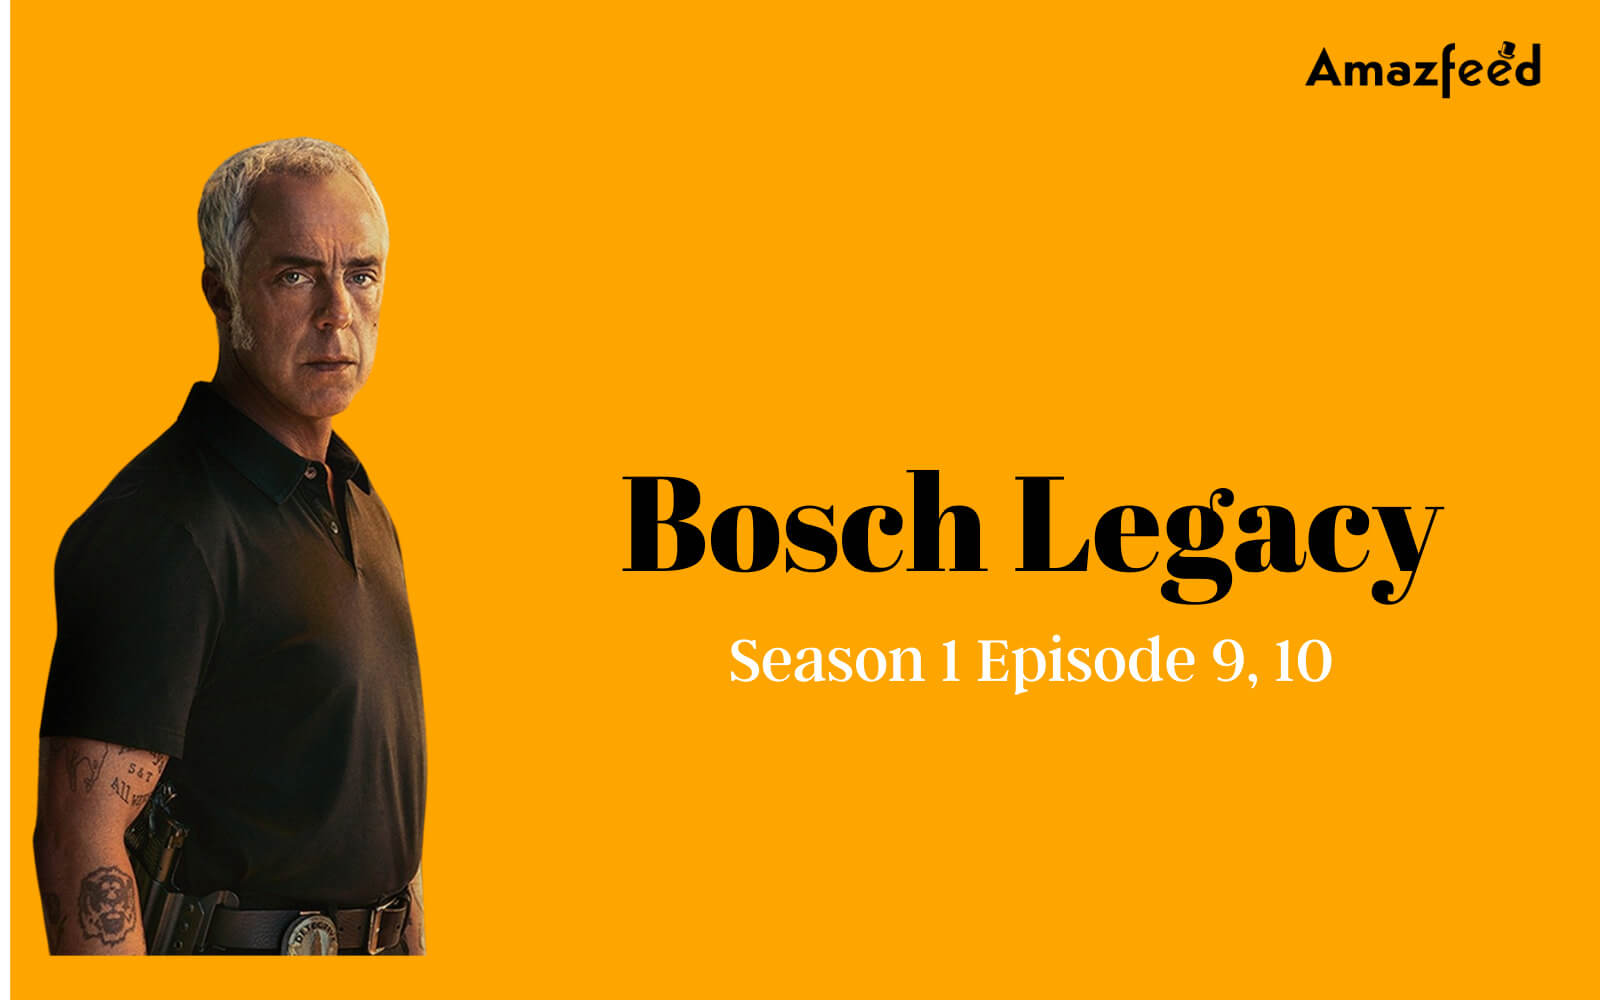 Bosch Legacy Season 1 Episode 9, 10 Release date